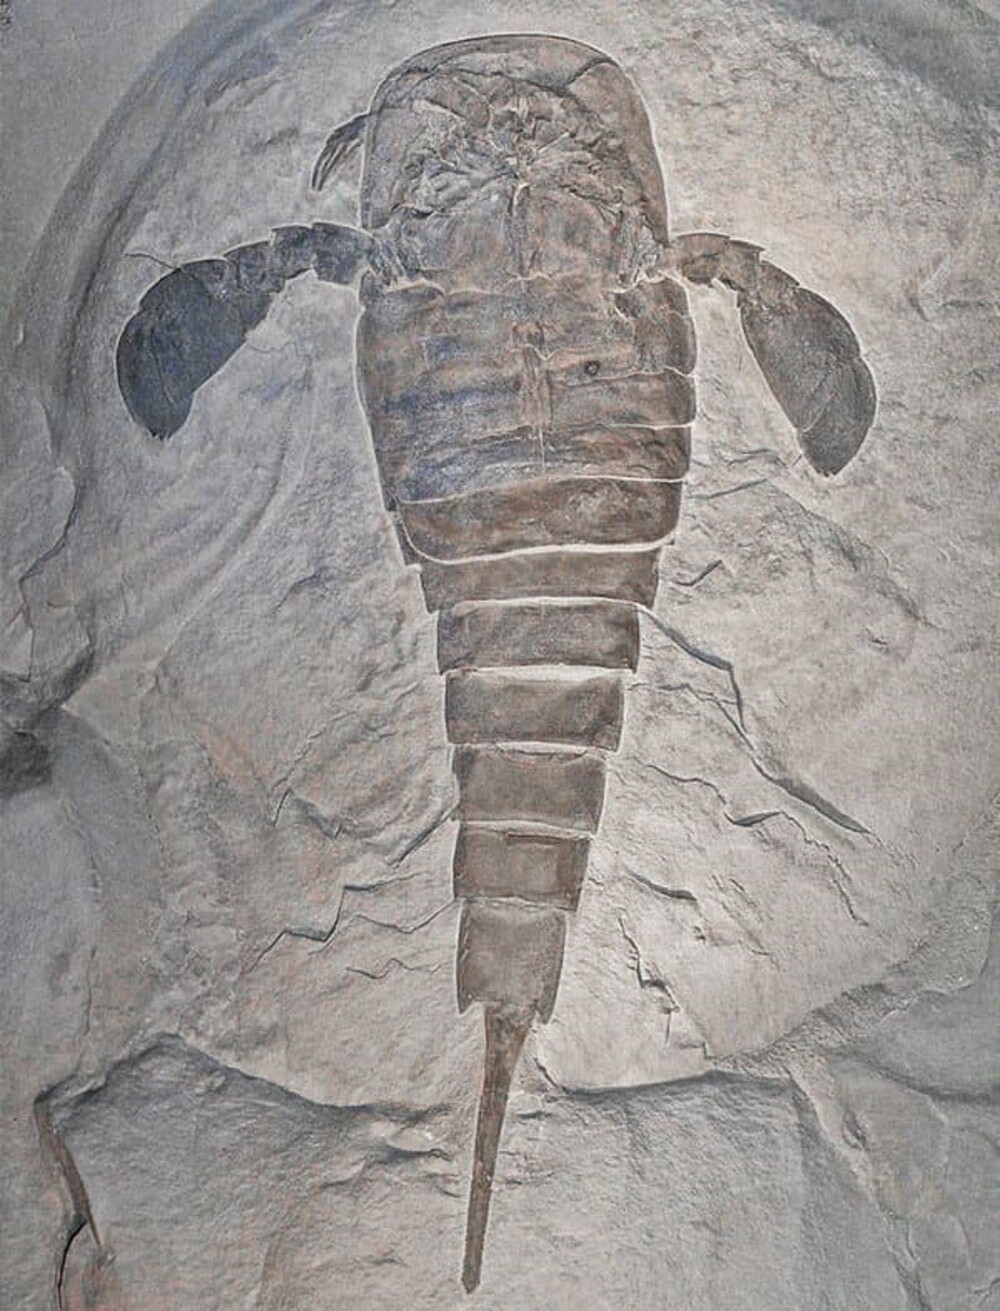 23. Ракоскорпионы - вымершие членистоногие, обитавшие 510-248 млн лет назад. Иногда длина этих скорпионоподобных существ достигала более 2 метров